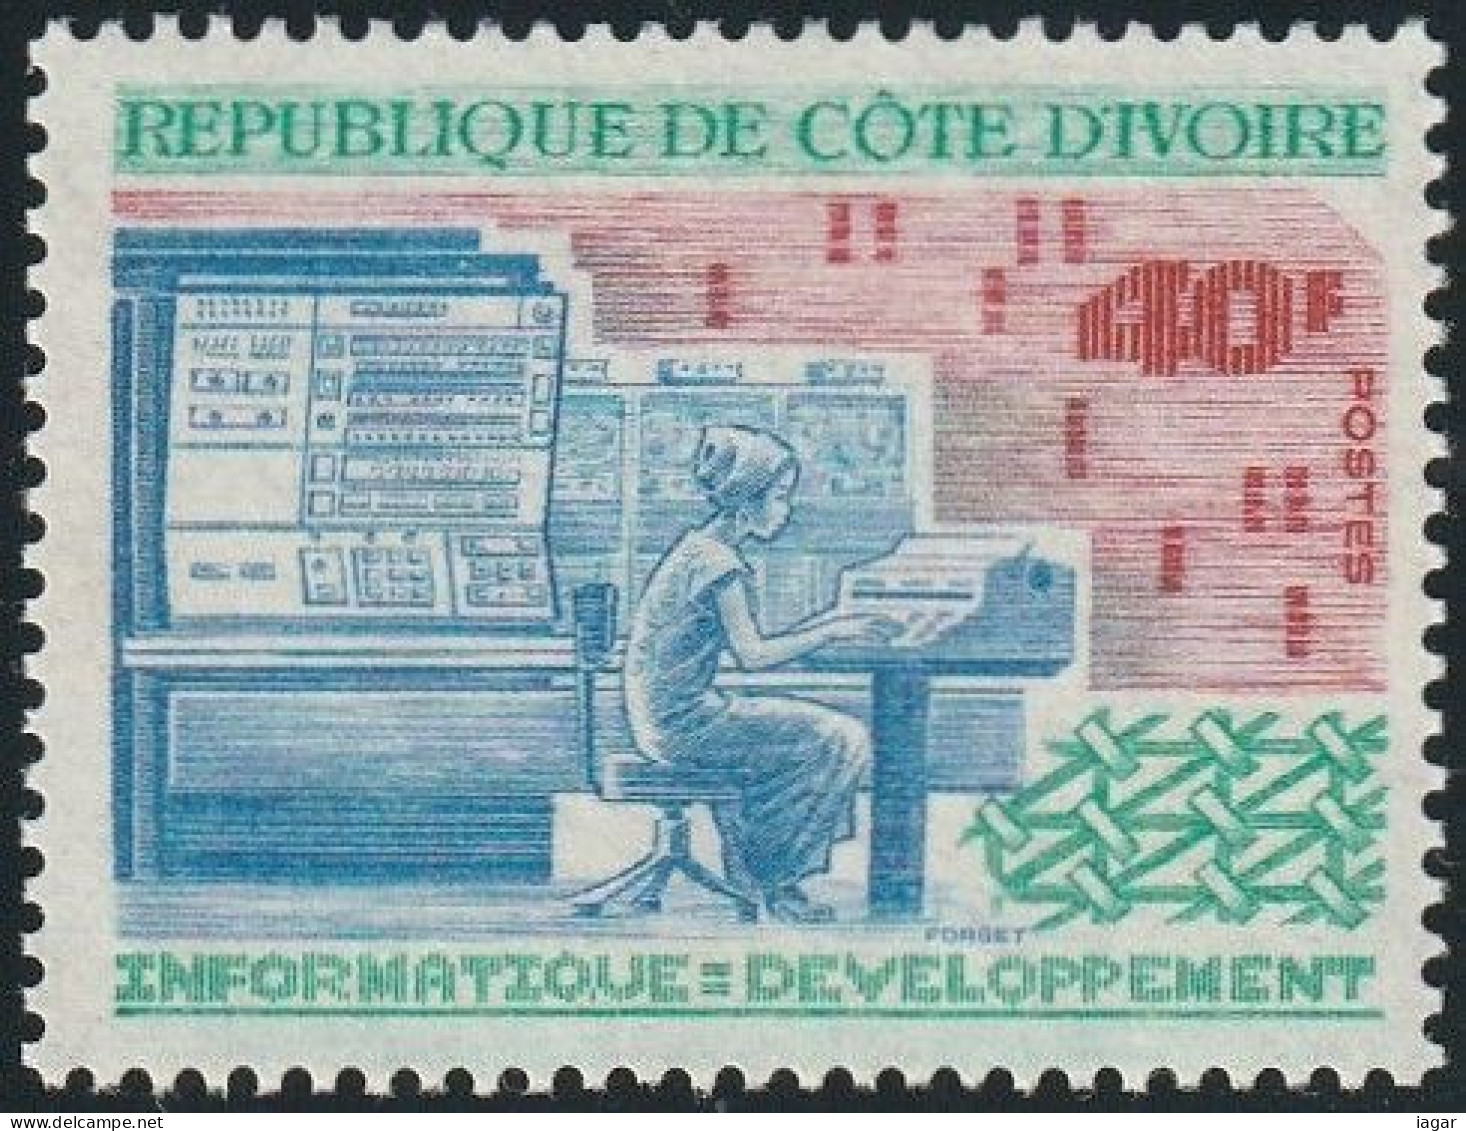 THEMATIC SCIENCE: IT - DEVELOPMENT      -  COTE D'IVOIRE - Informatique